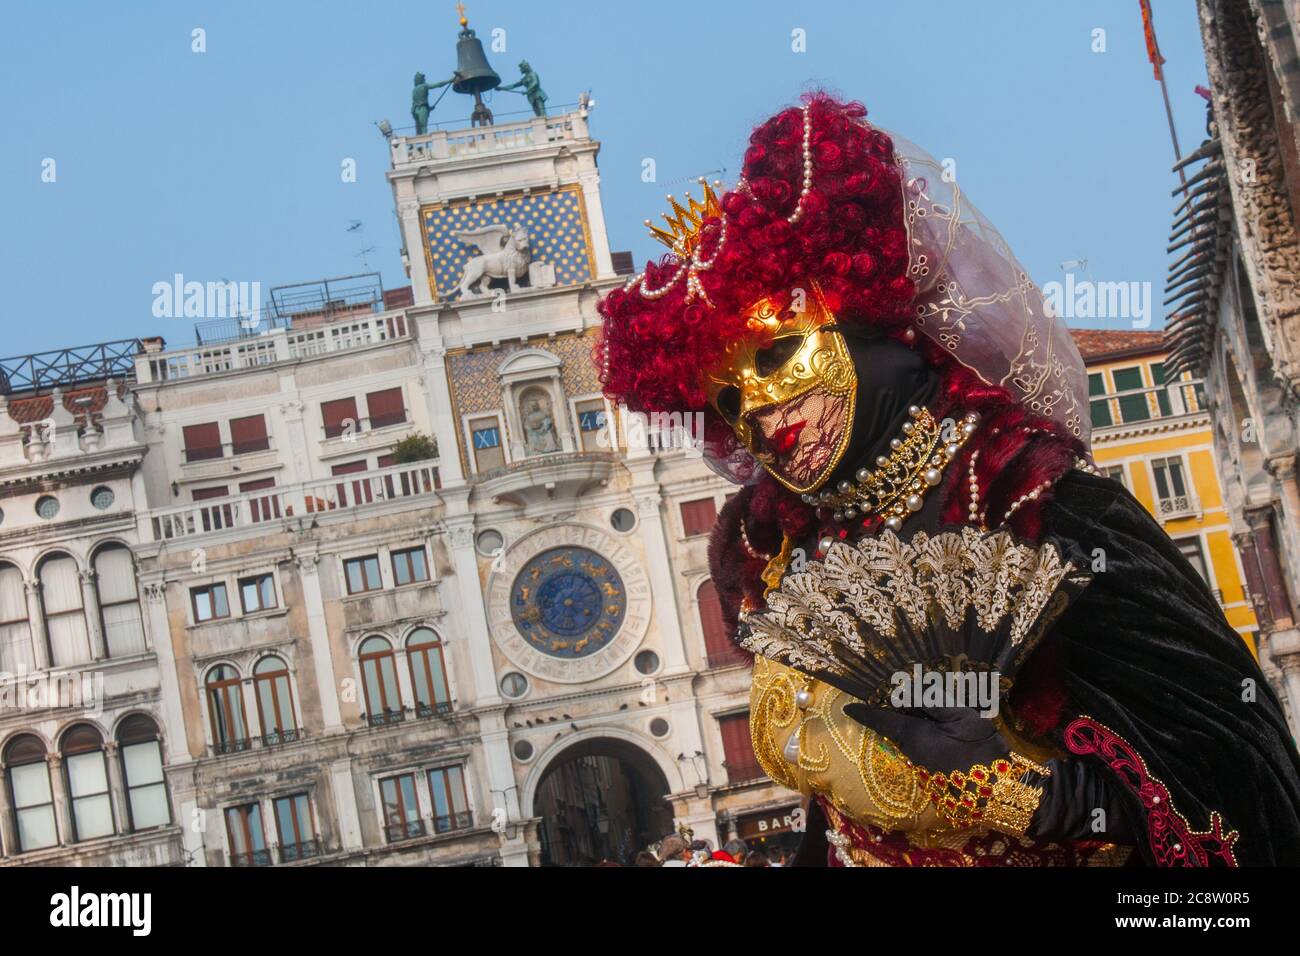 VENEDIG, ITALIEN - 28. FEBRUAR 2020: Eine wunderschöne Maske in schwarz-roten Kostümposen während des Karnevals von Venedig Stockfoto